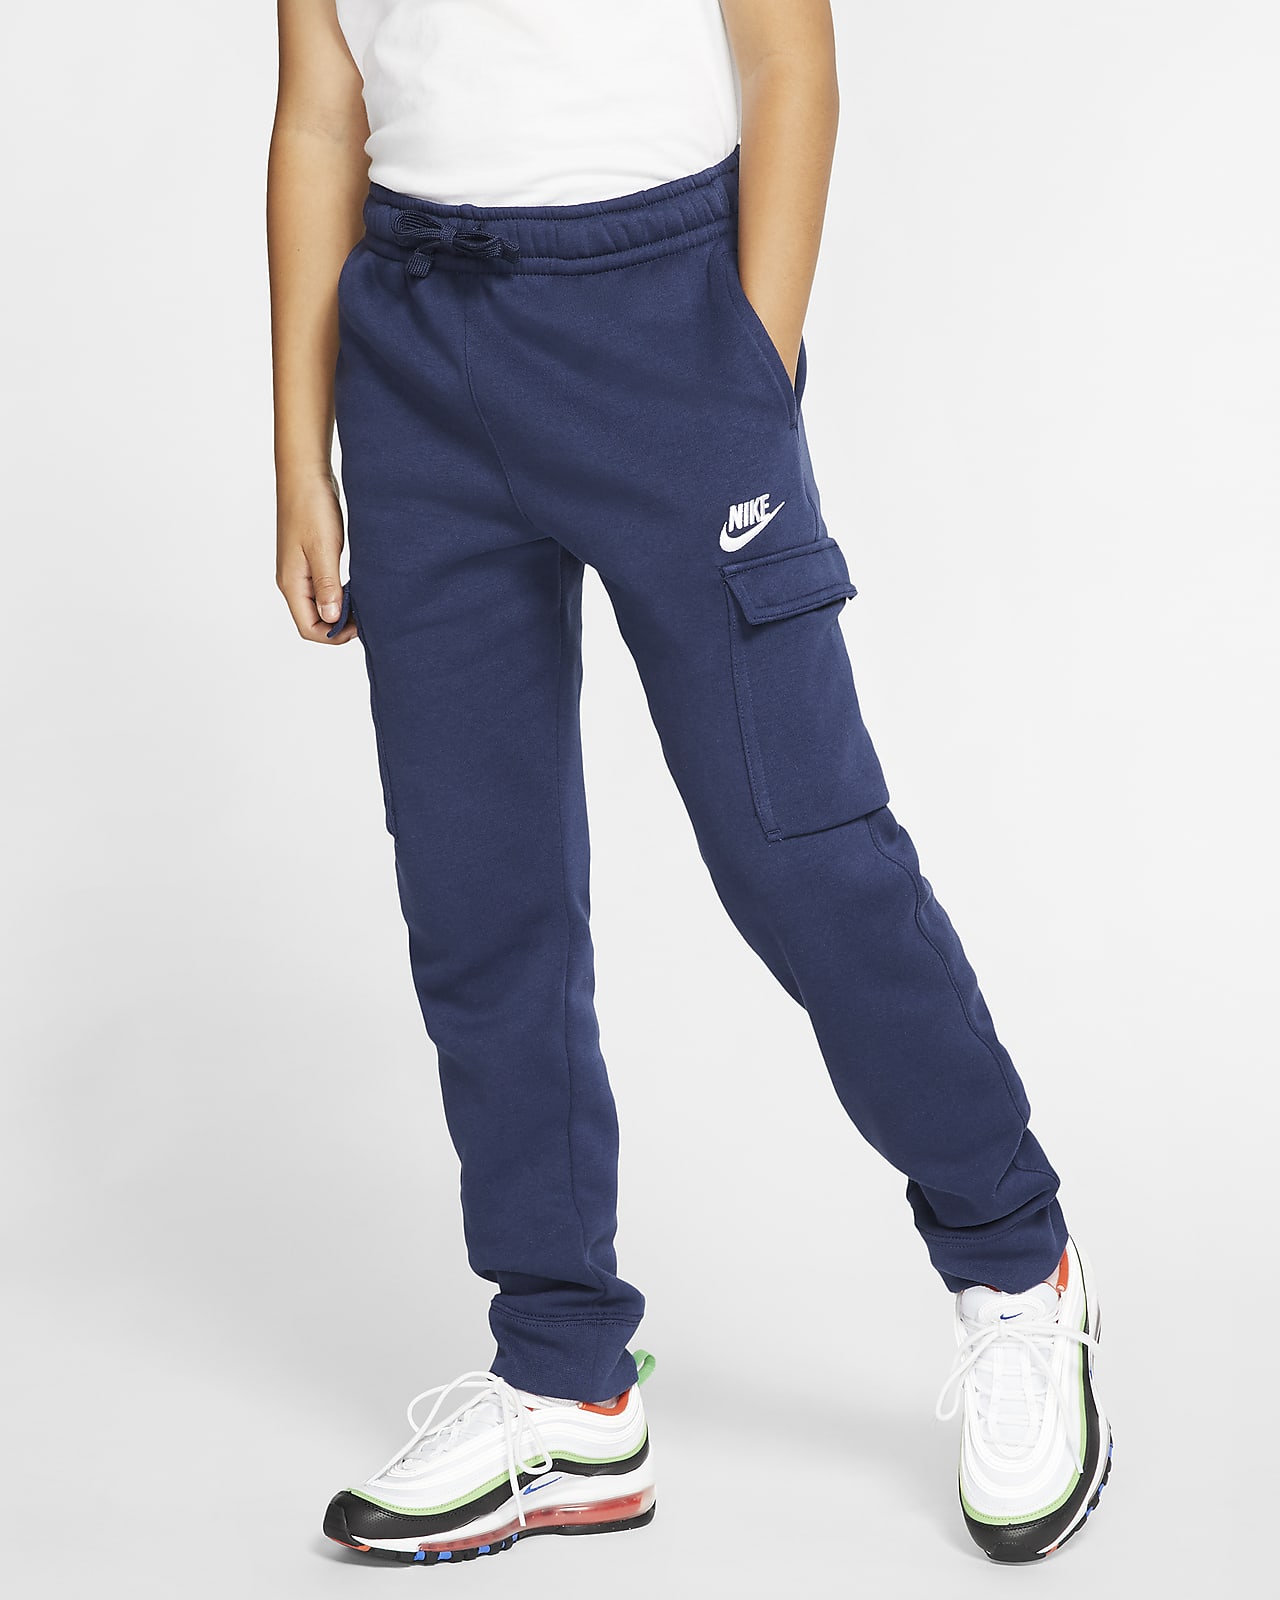 Nike Sportswear Club Big Kids' (Boys') Cargo Pants